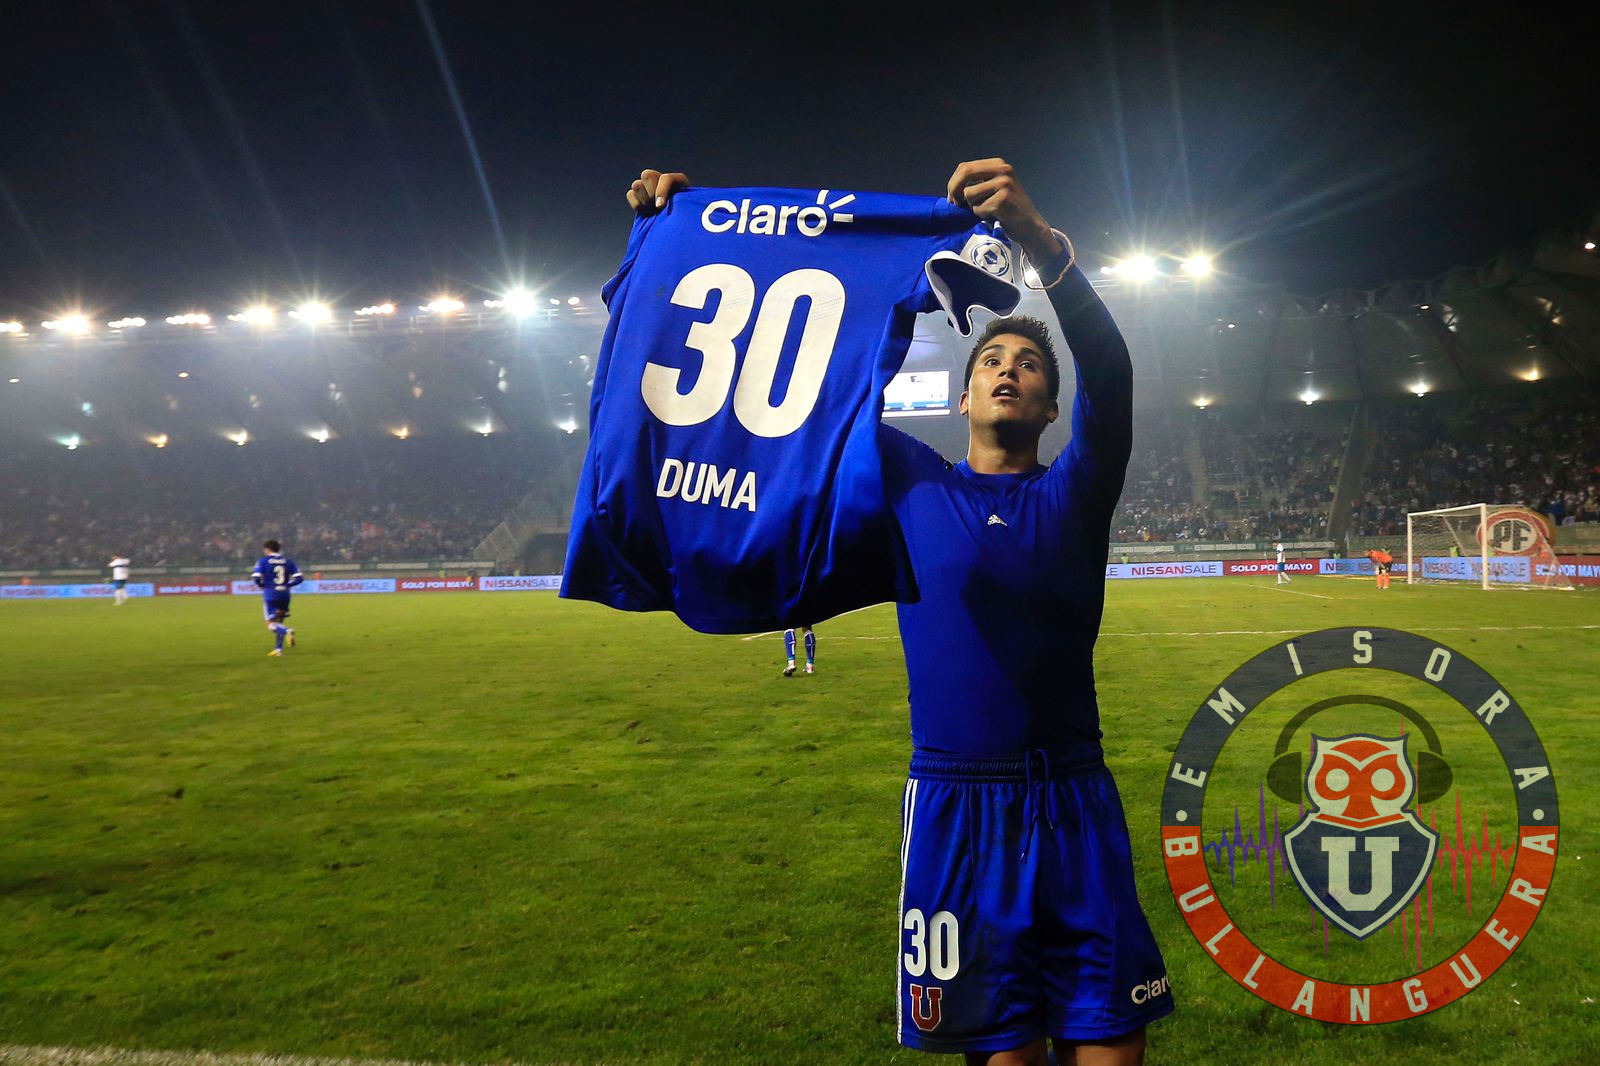 Juan Ignacio Duma recuerda con nostalgia el gol a la UC en la final de la Copa Chile: “Fue muy emocionante y soñado”